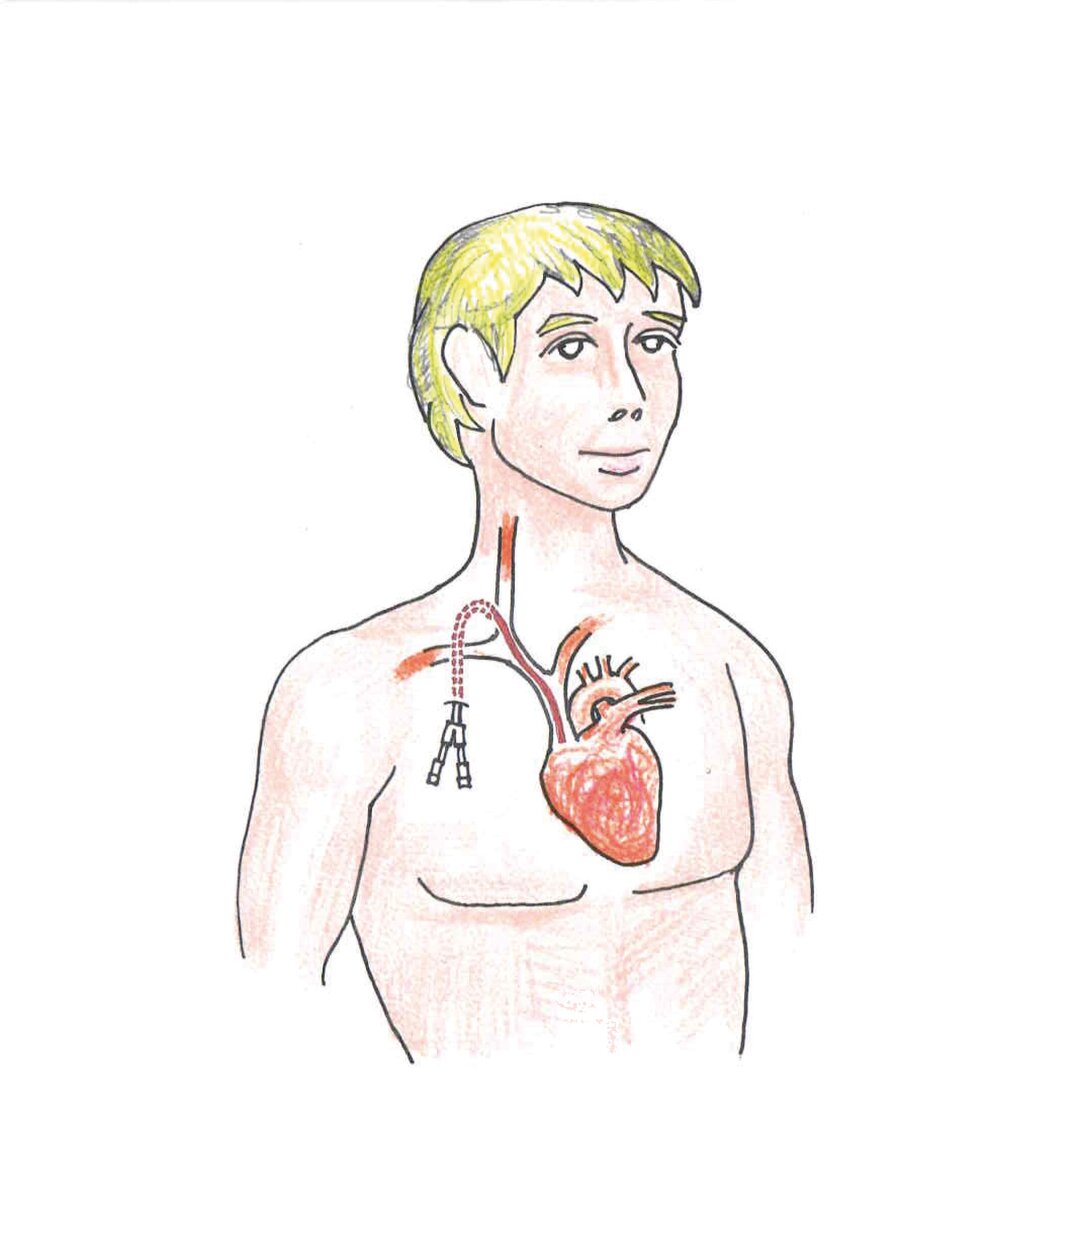 En tegning af en mand, der har fået permanent dialysekateter.